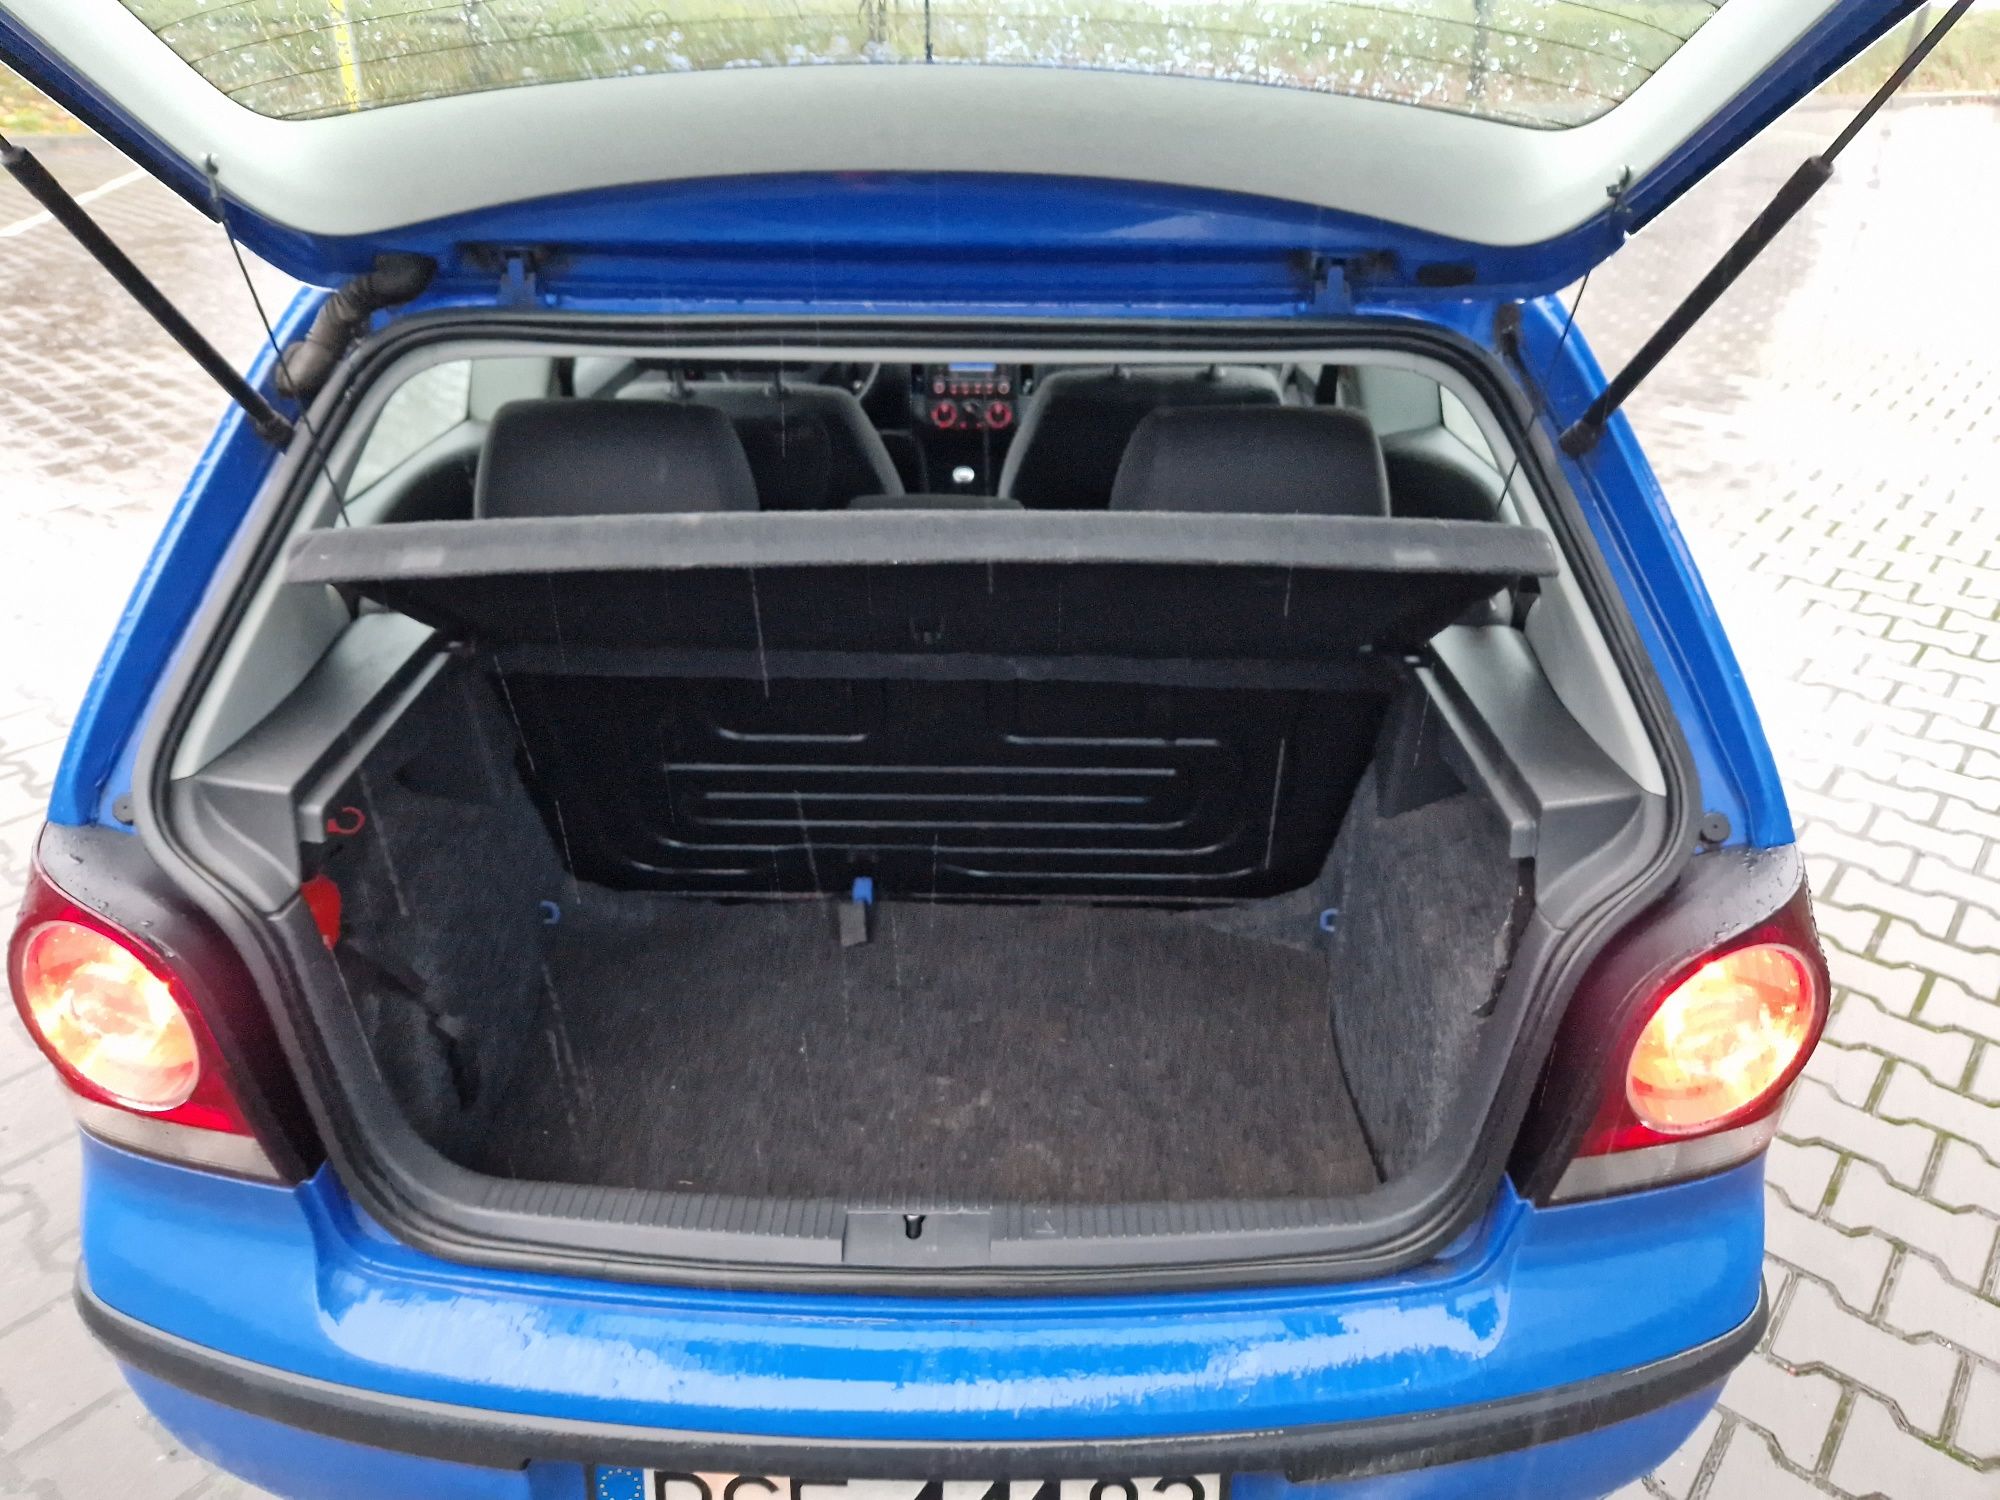 Polo VW 1.2 benzyna